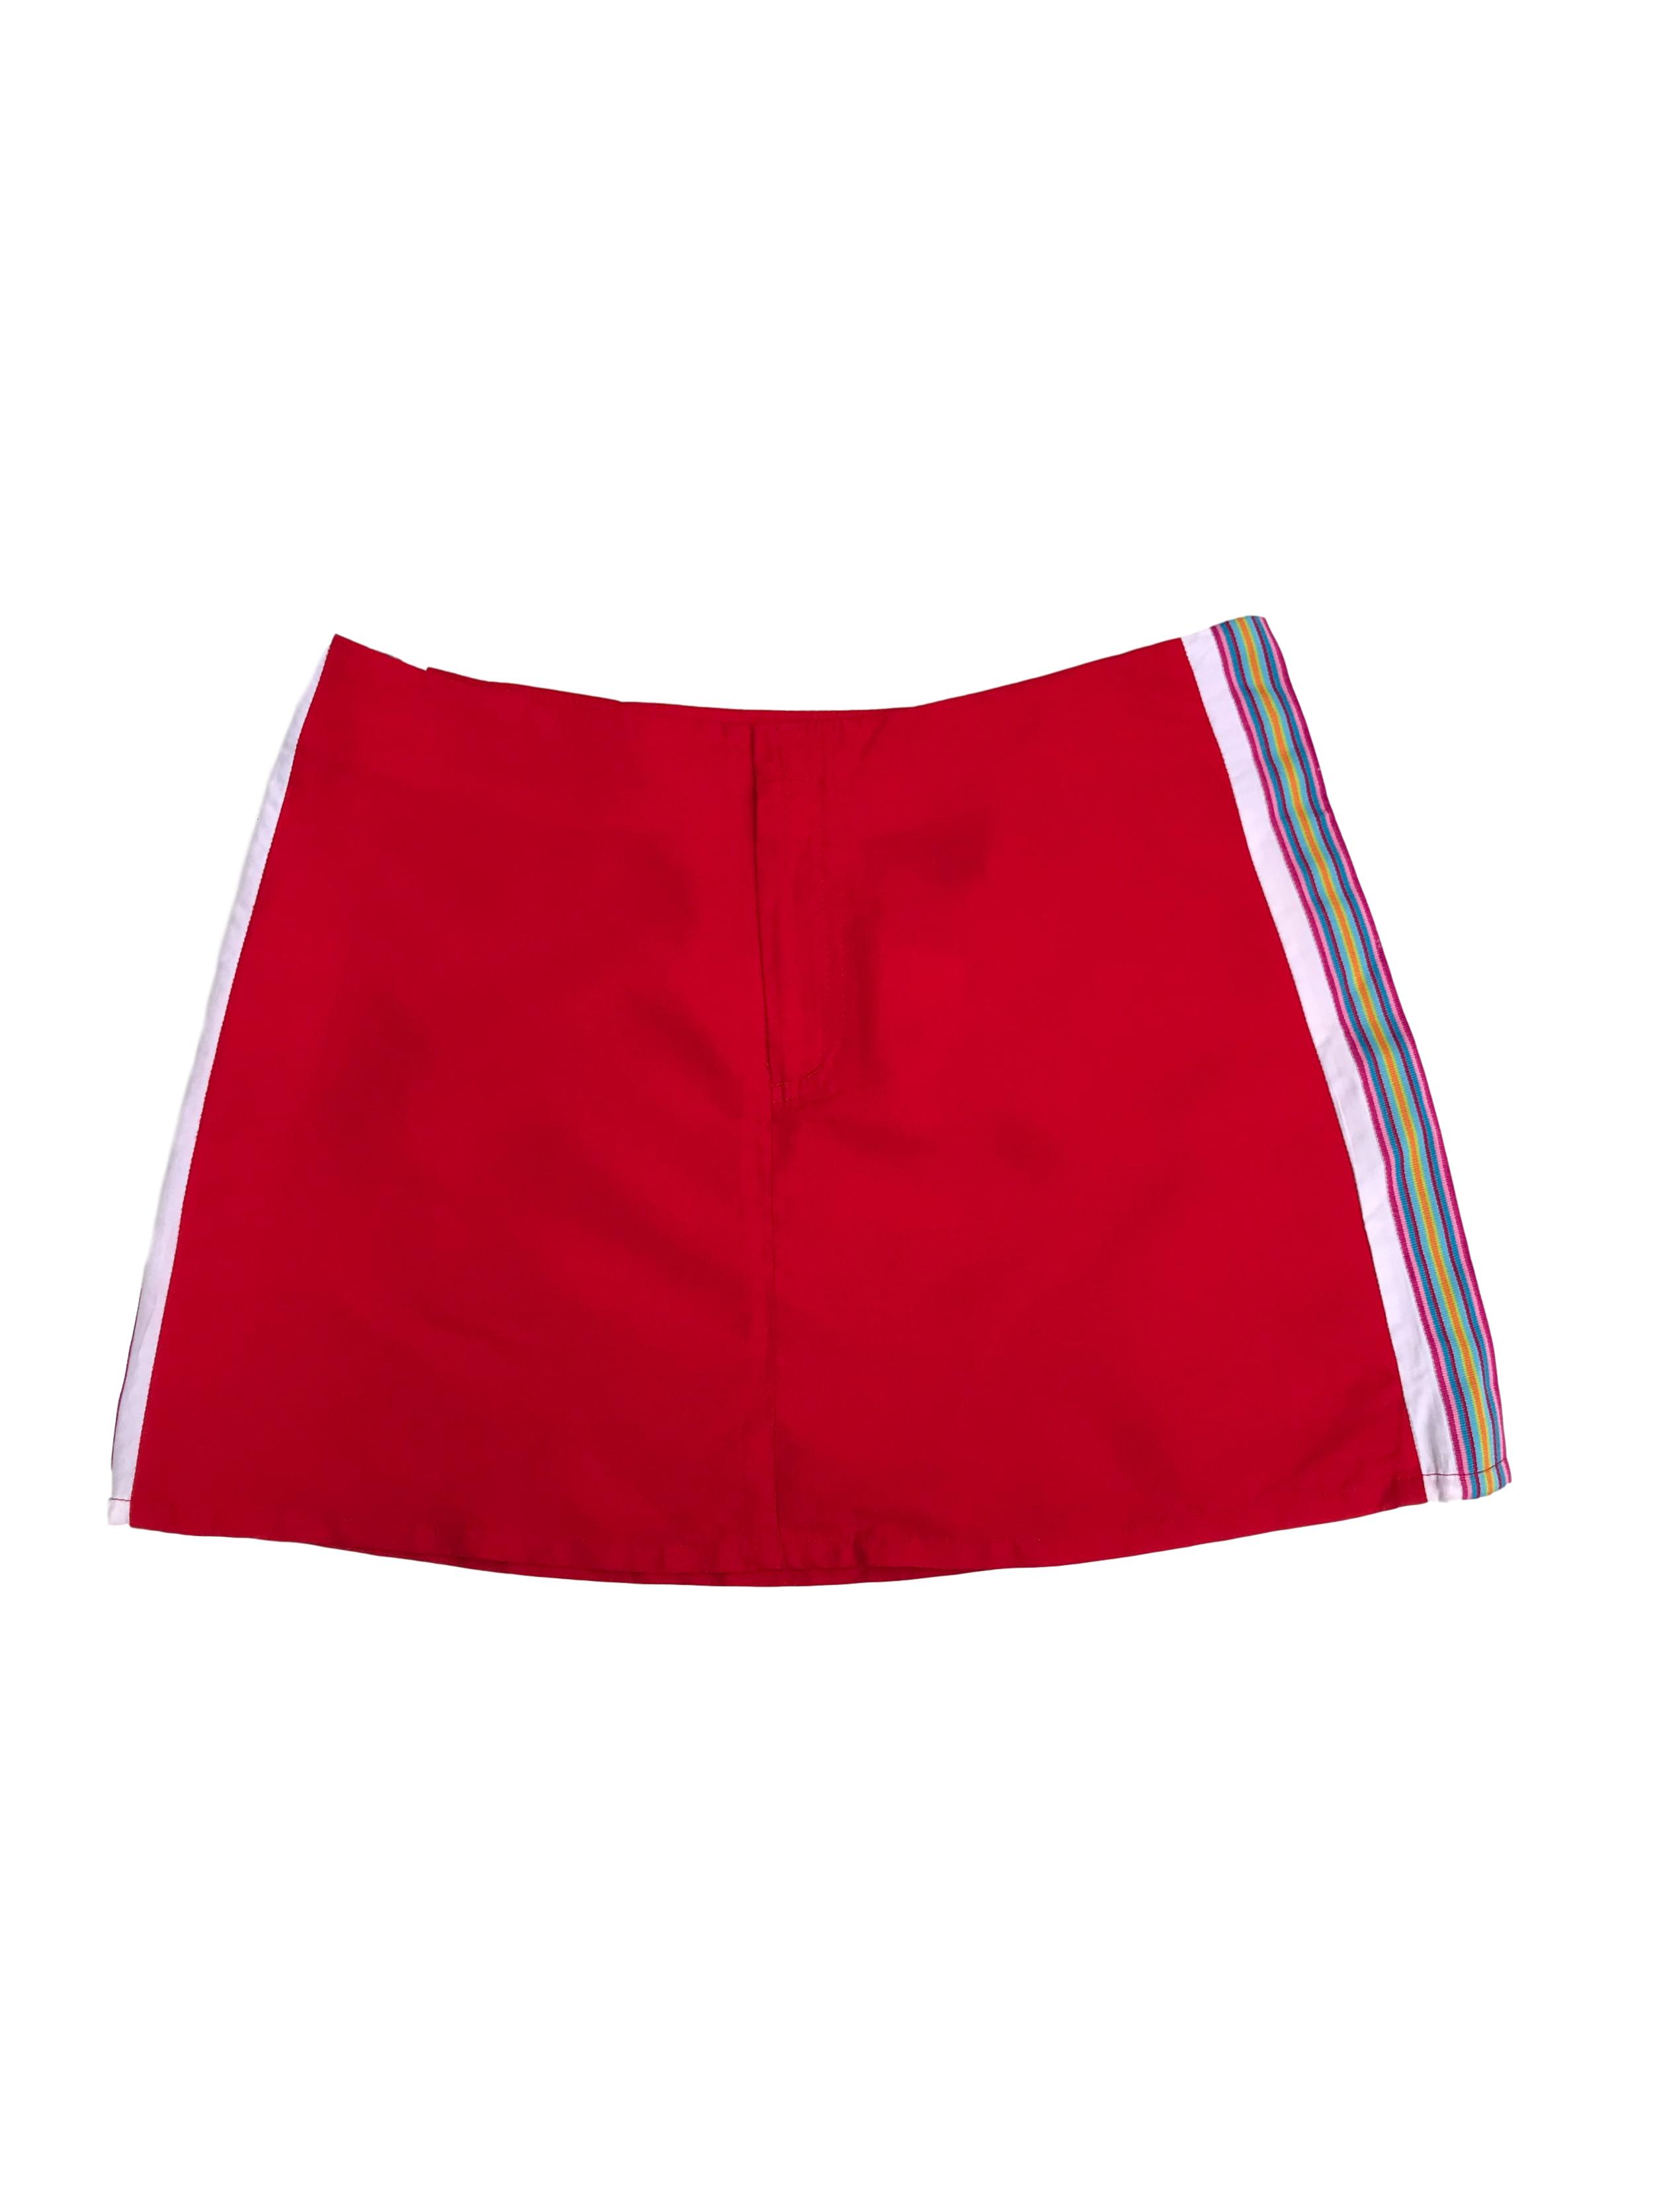 Falda roja con franjas laterales y cierre delantero. Sporty look Pretina 80cm Largo 36cm